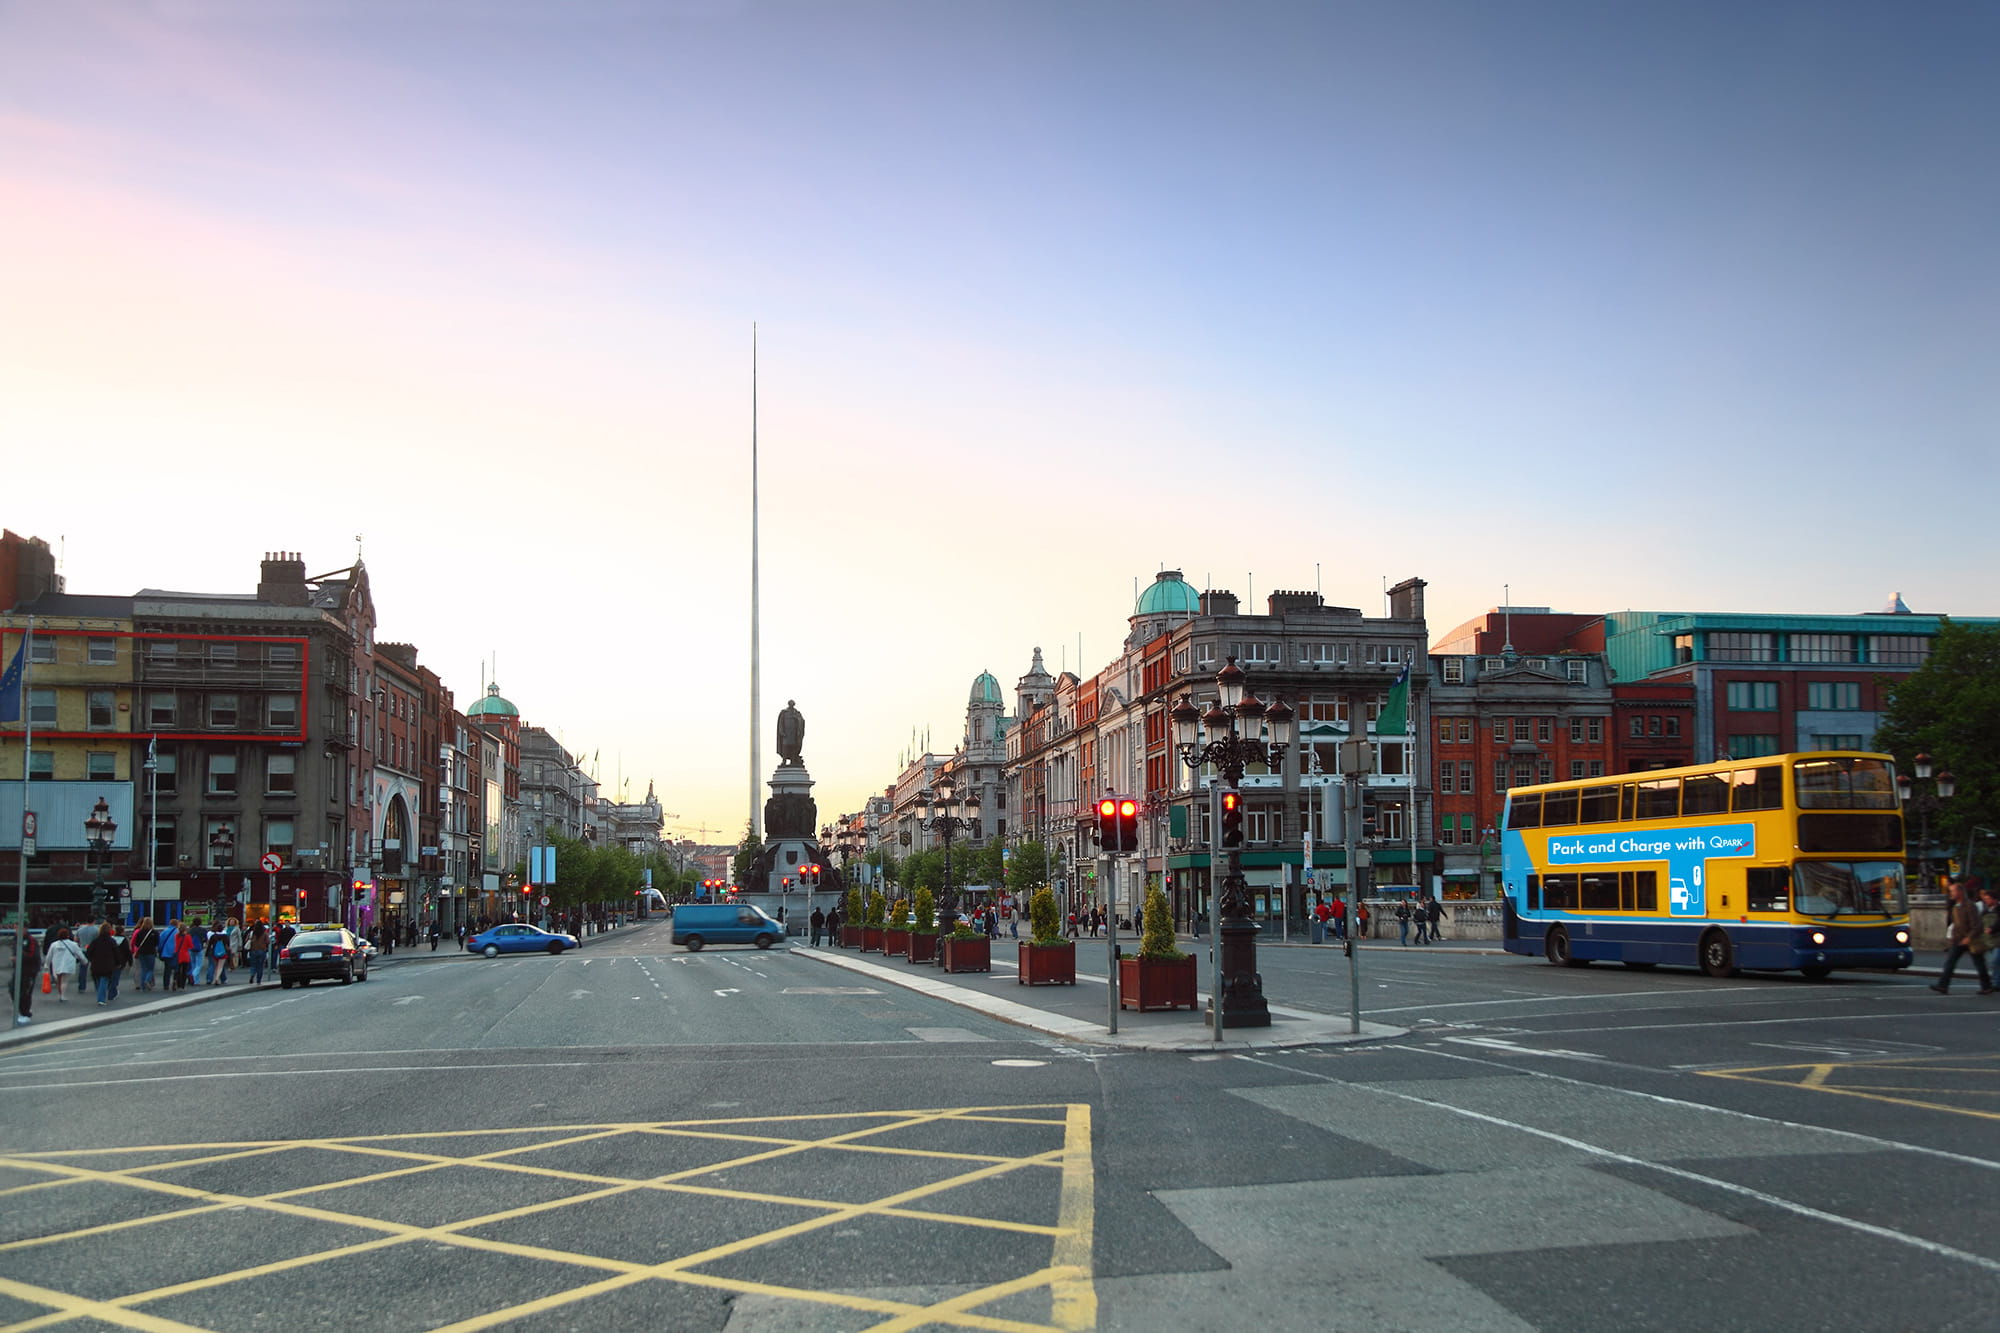 Dublin City Centre